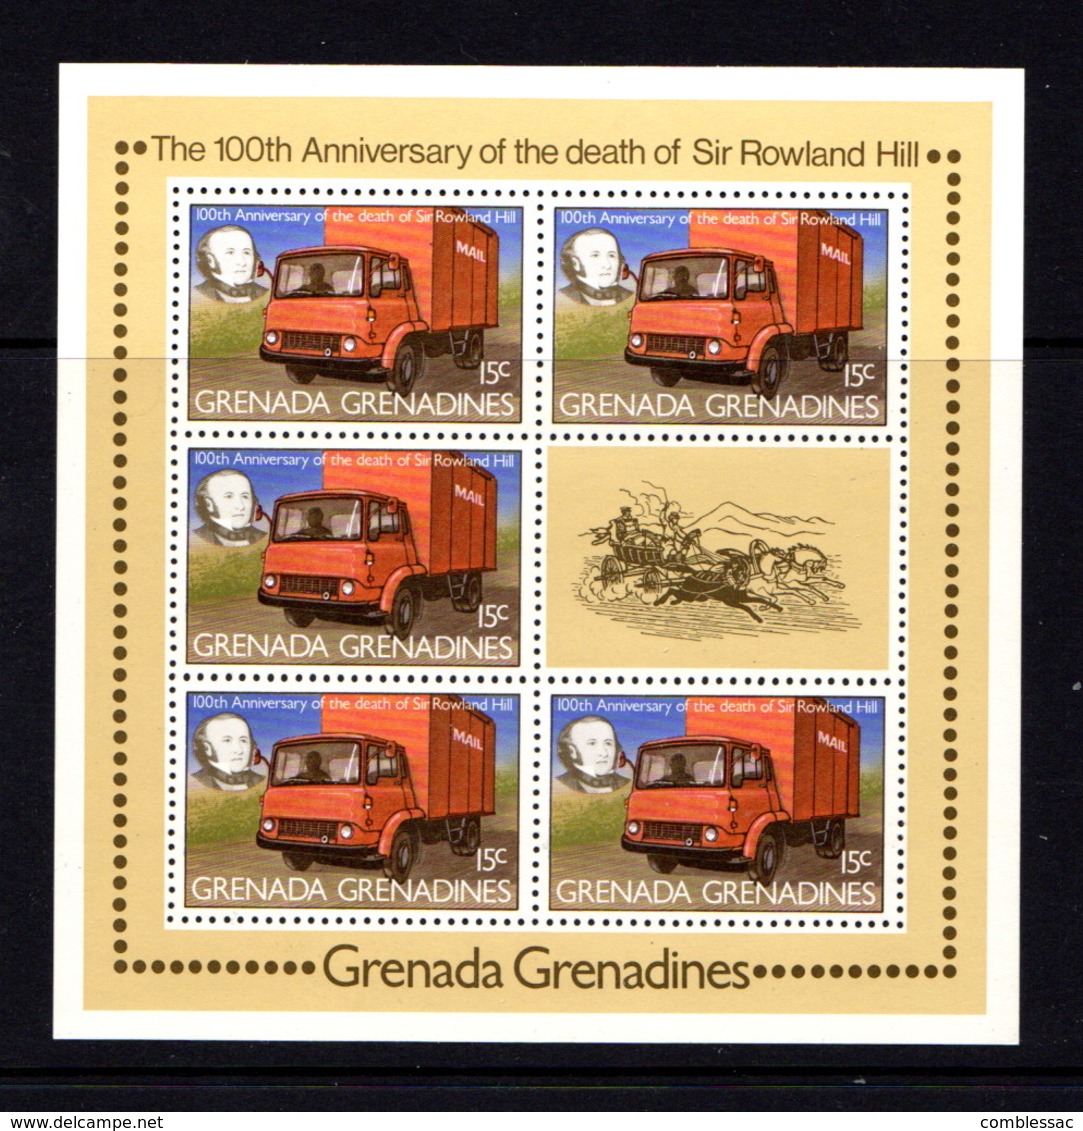 GRENADA  GRENADINES   1979    Death  Centenary  Of  Sir  Rowland  Hill   4  Sheetlets       MNH - Grenada (1974-...)